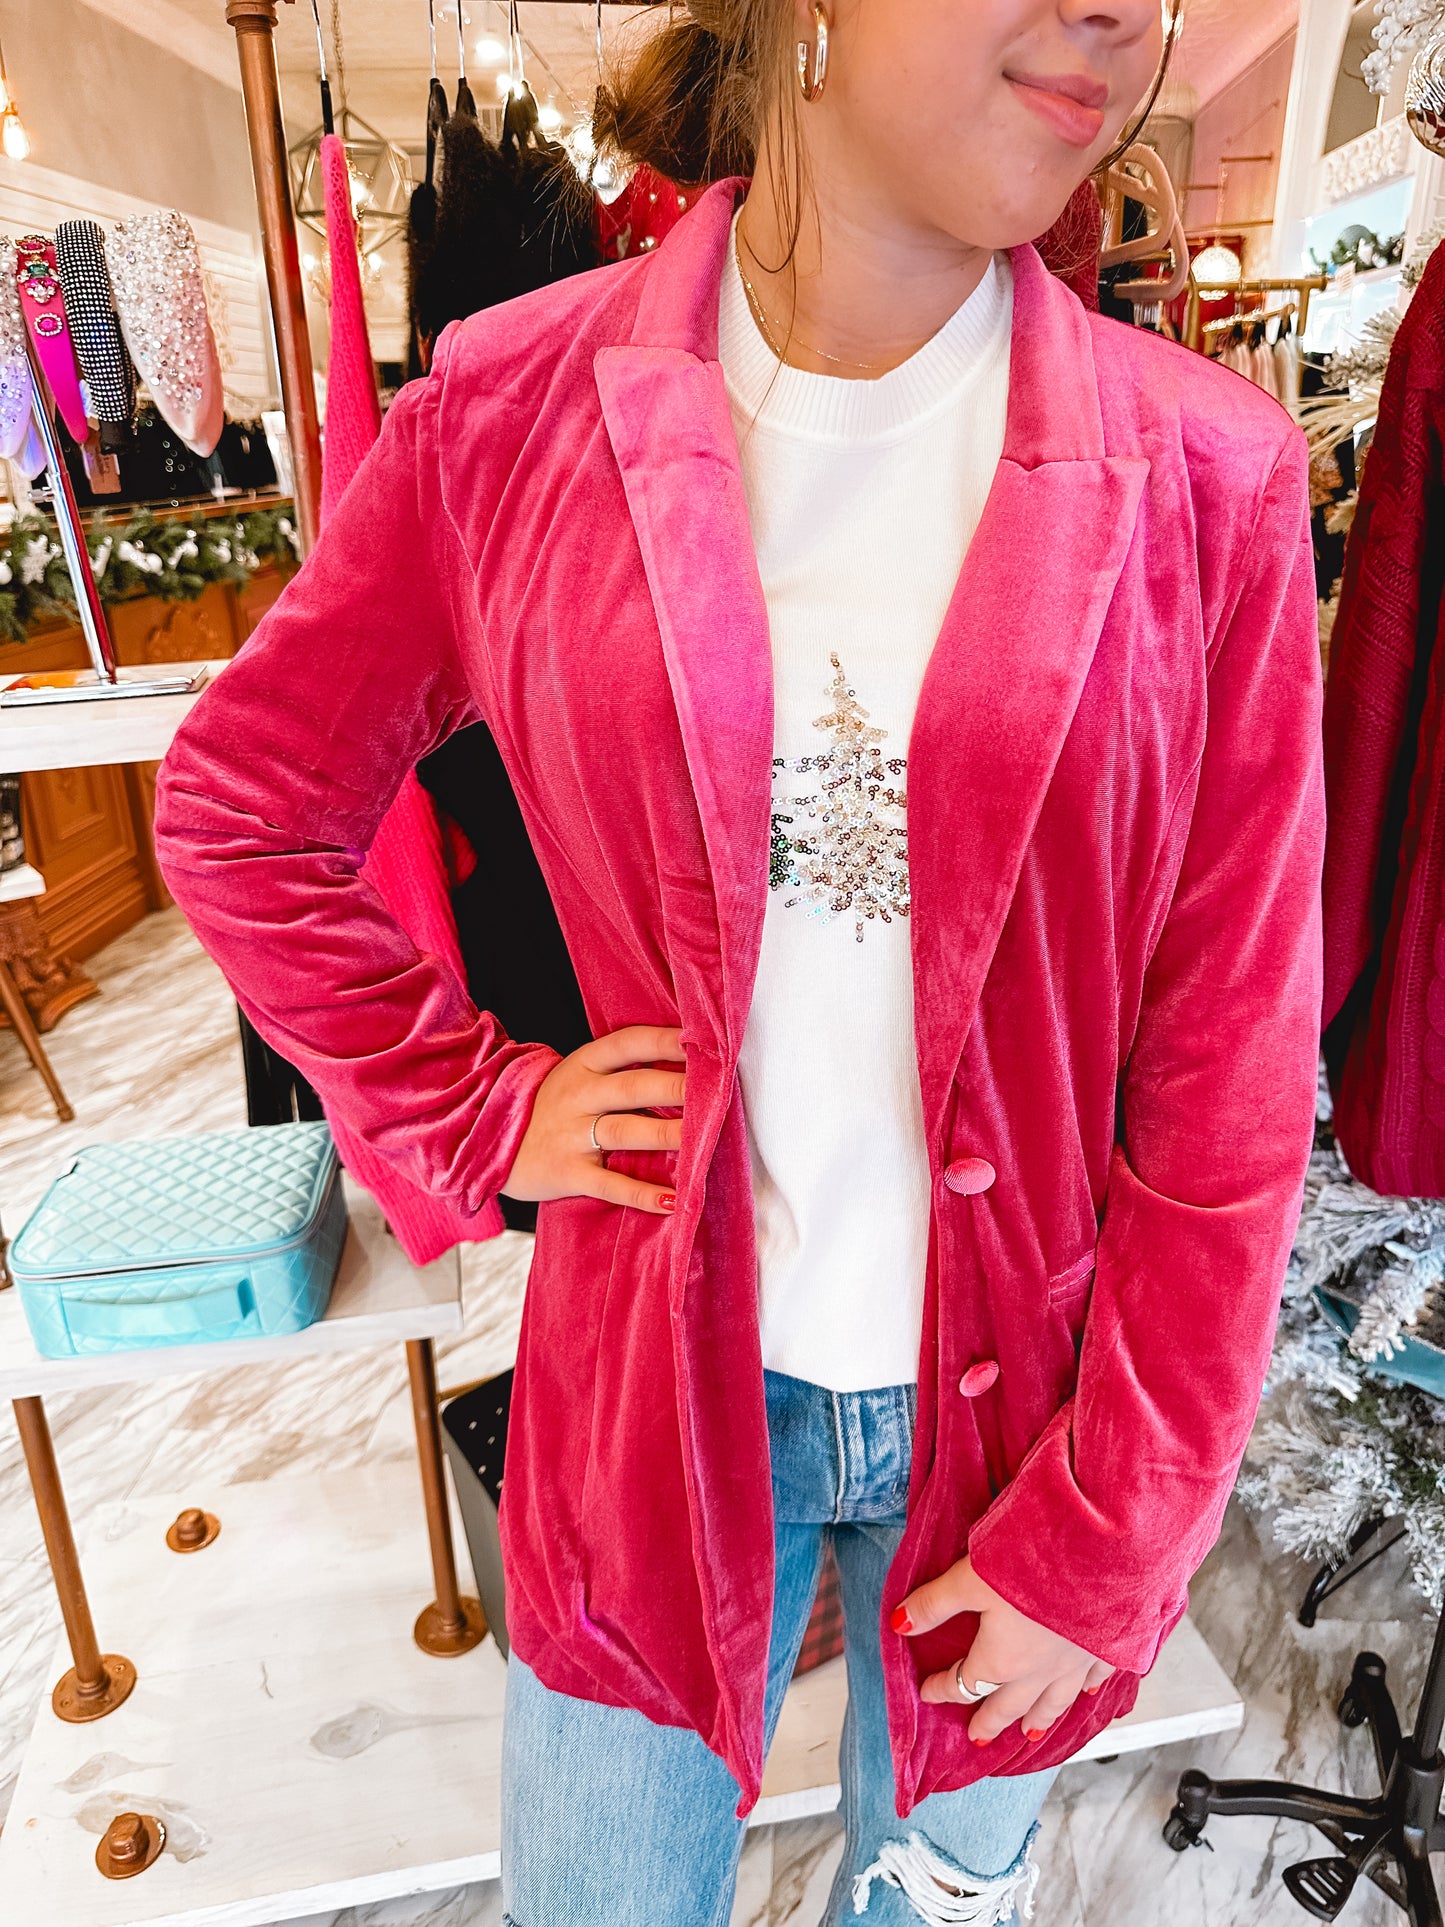 Beverly Hills Hot Pink Velvet Blazer